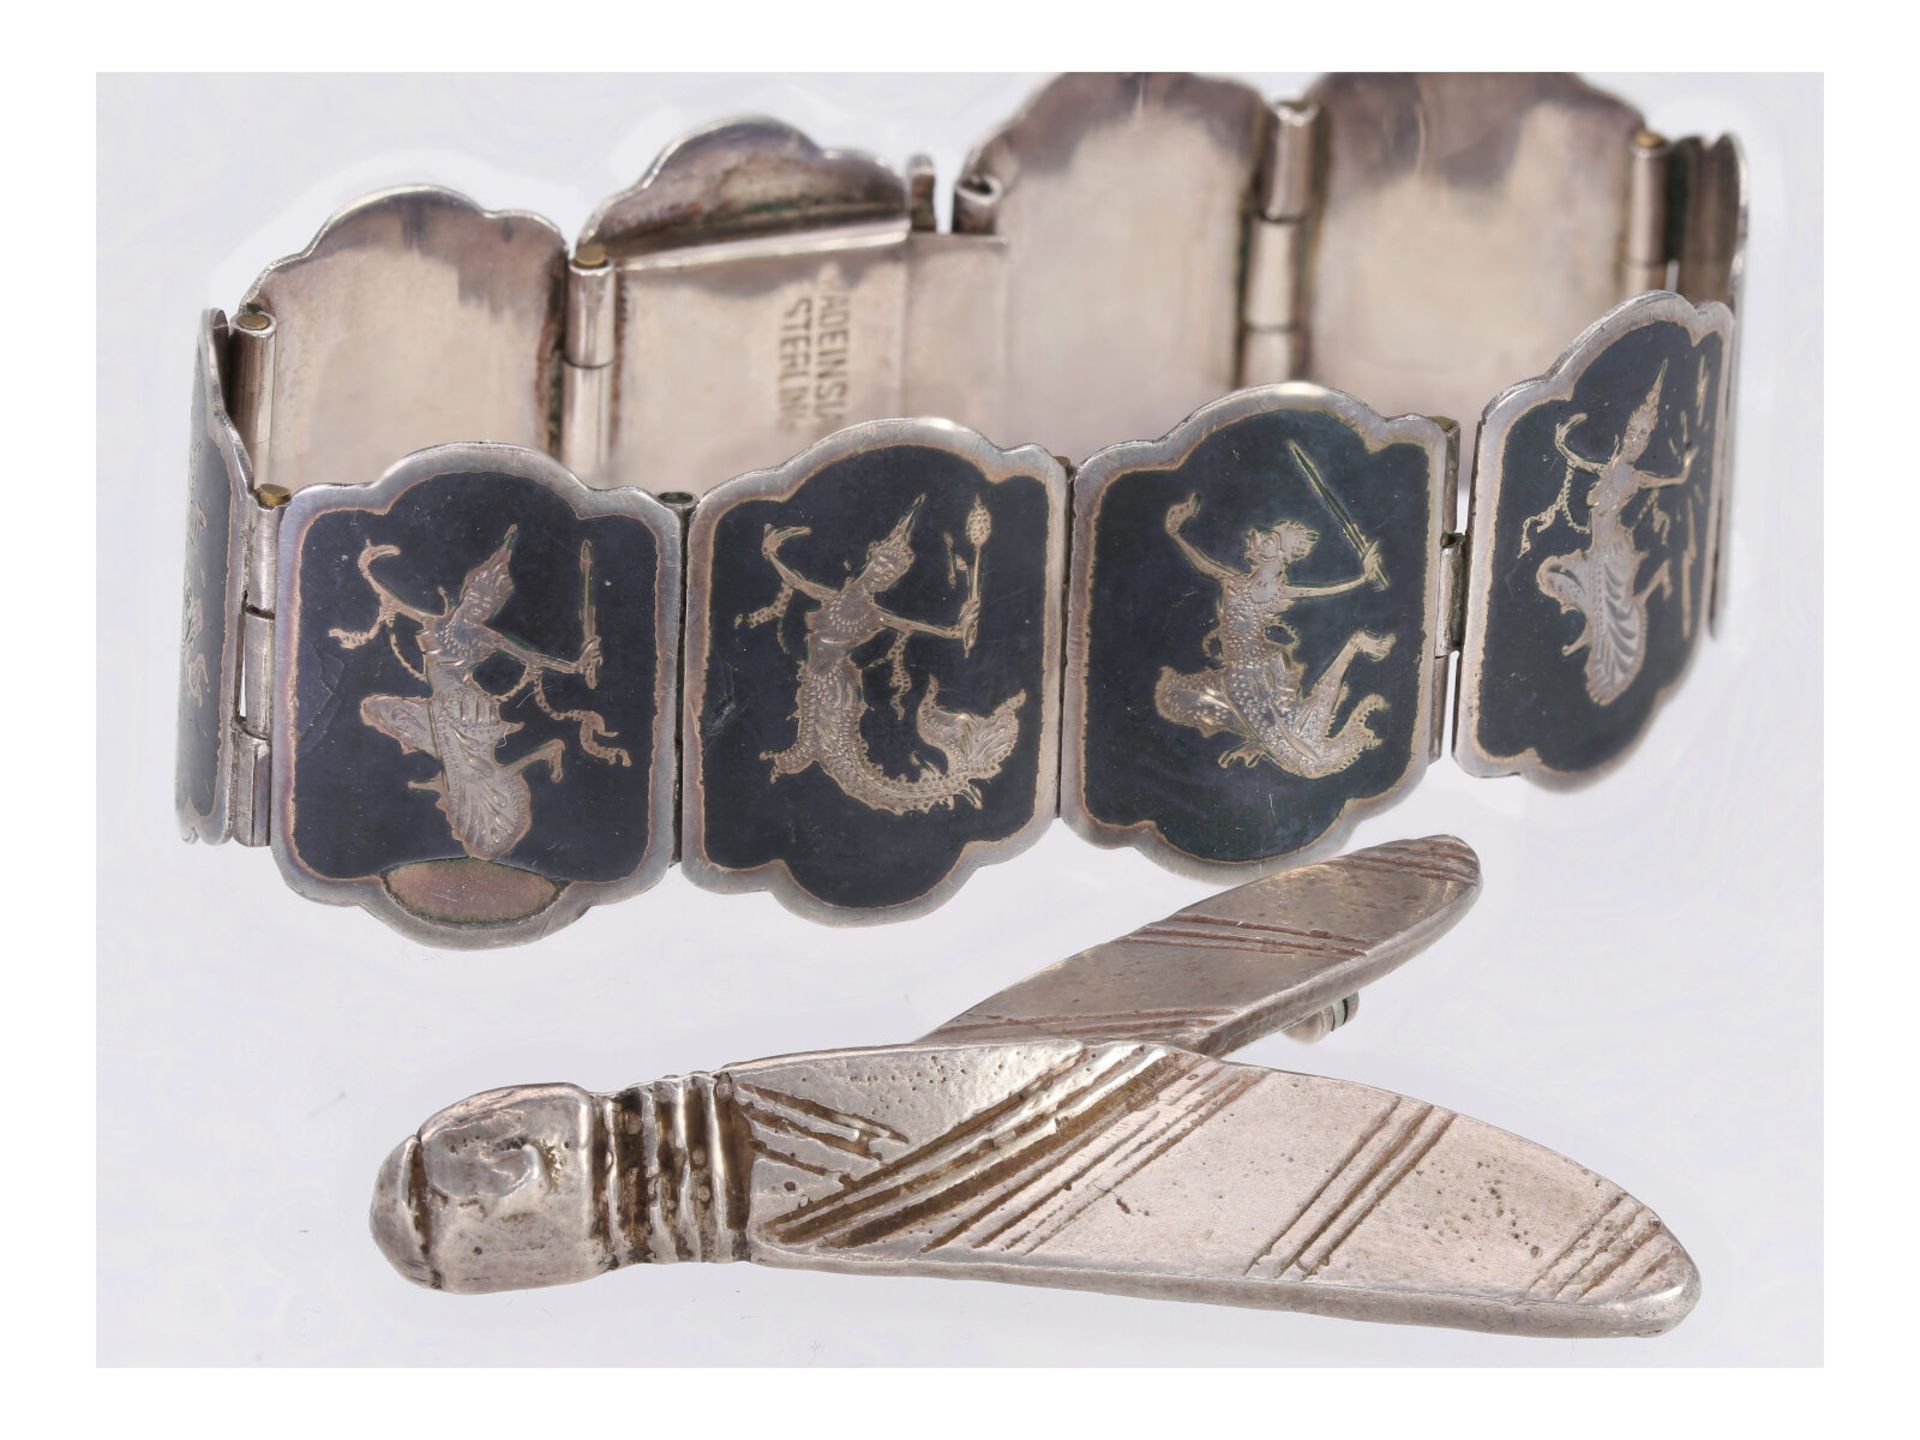 Armband/Brosche: seltene Art déco Brosche Motiv "Nachtfalter" und ein altes asiatisches Silber-Armba - Bild 3 aus 3